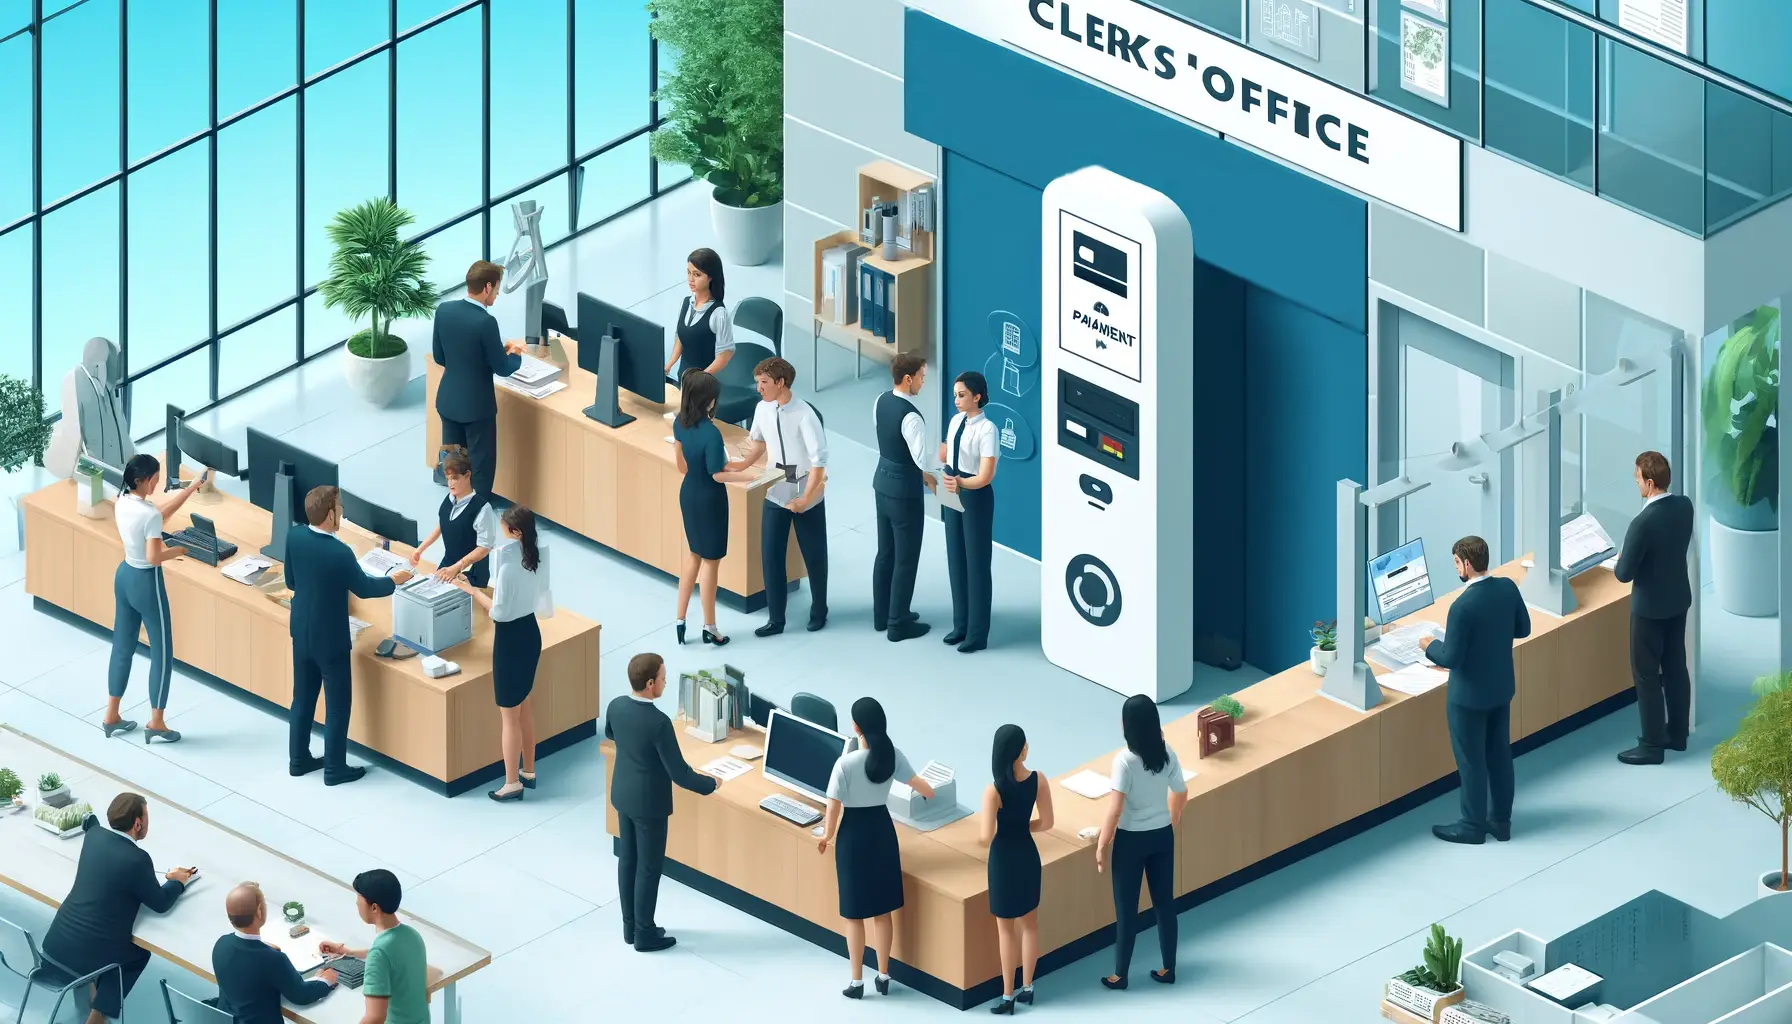 Clerk’s Office